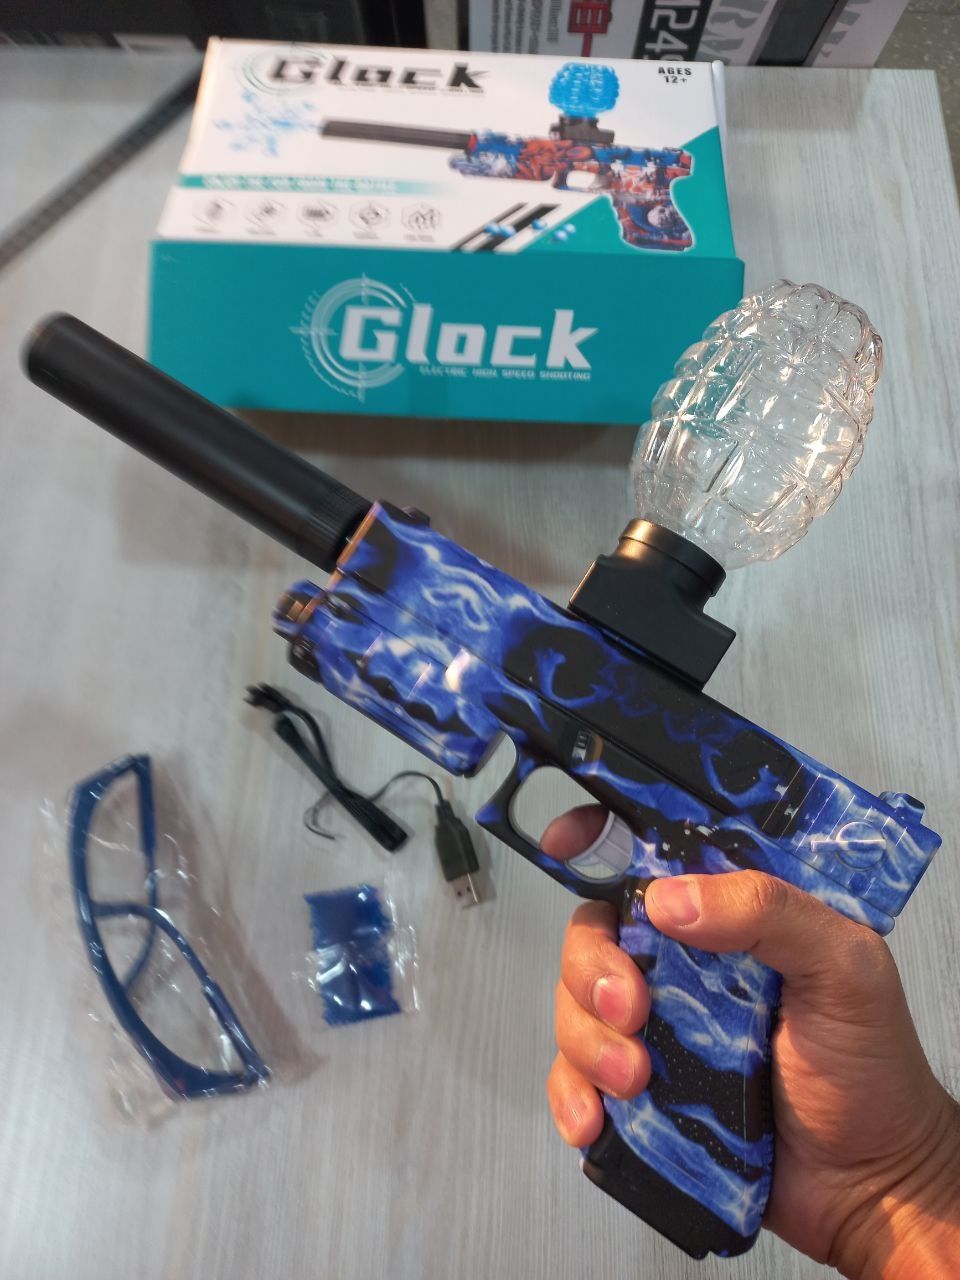 Orbigun Glock Орбиз Пистолет Глок. Автоматический режим стрельбы